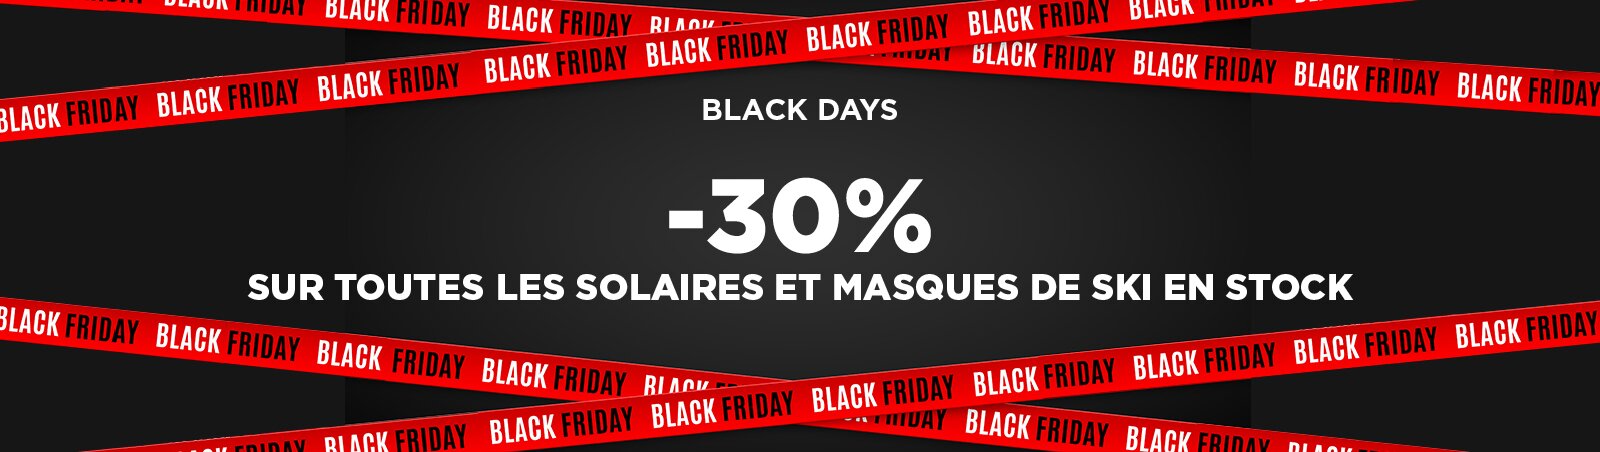 Black Days : -30% sur toutes les solaires et masques de ski en stock optique sergent